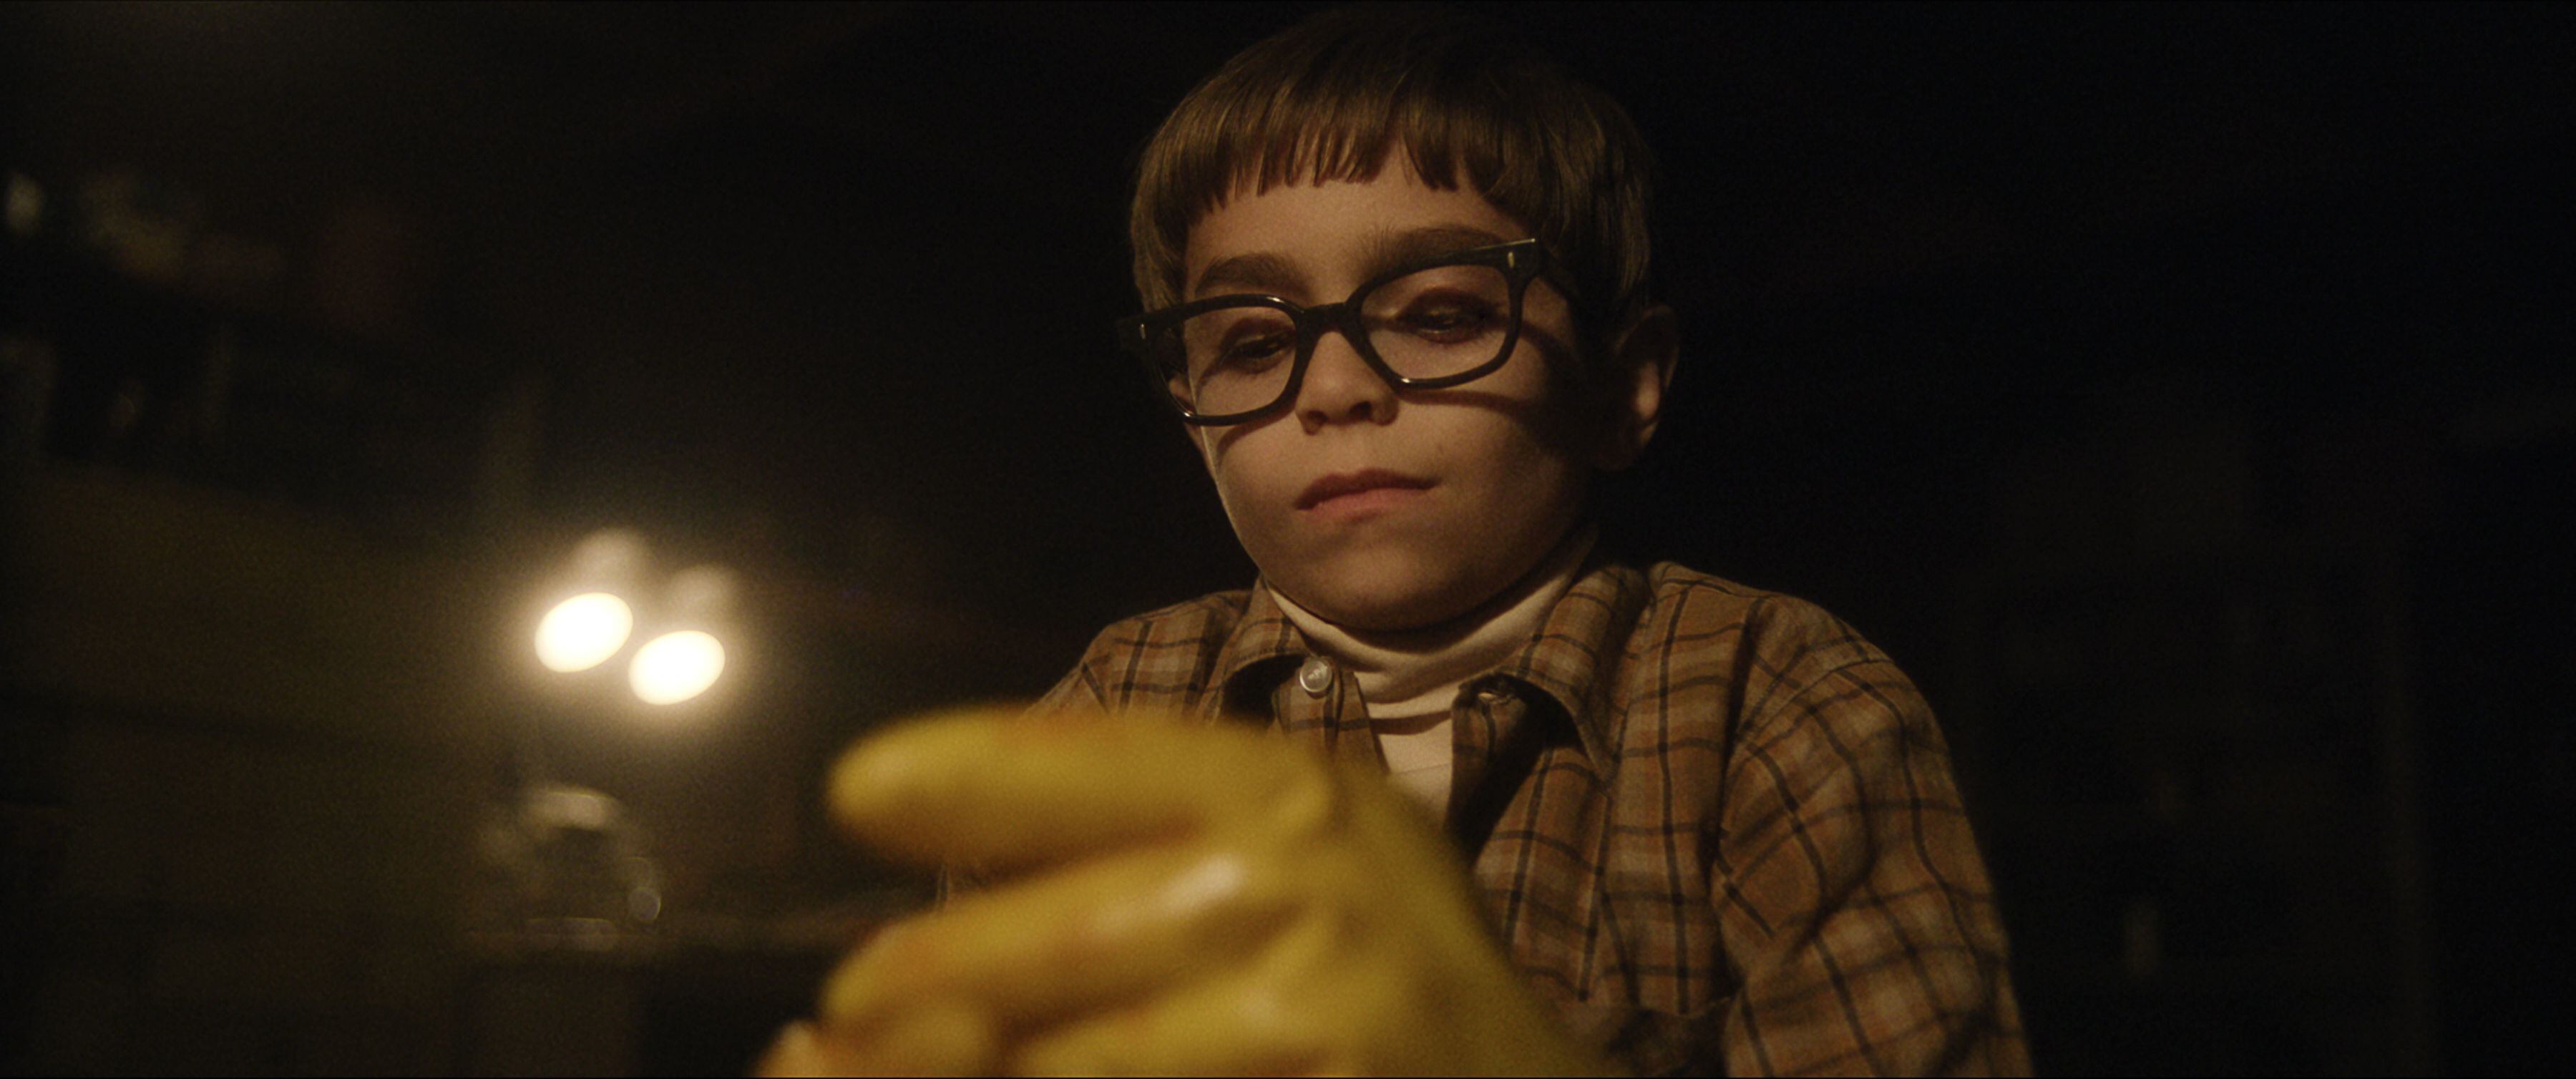 El programa muestra cómo fue Dahmer en su infancia, con constantes flashbacks. Foto: Netflix

